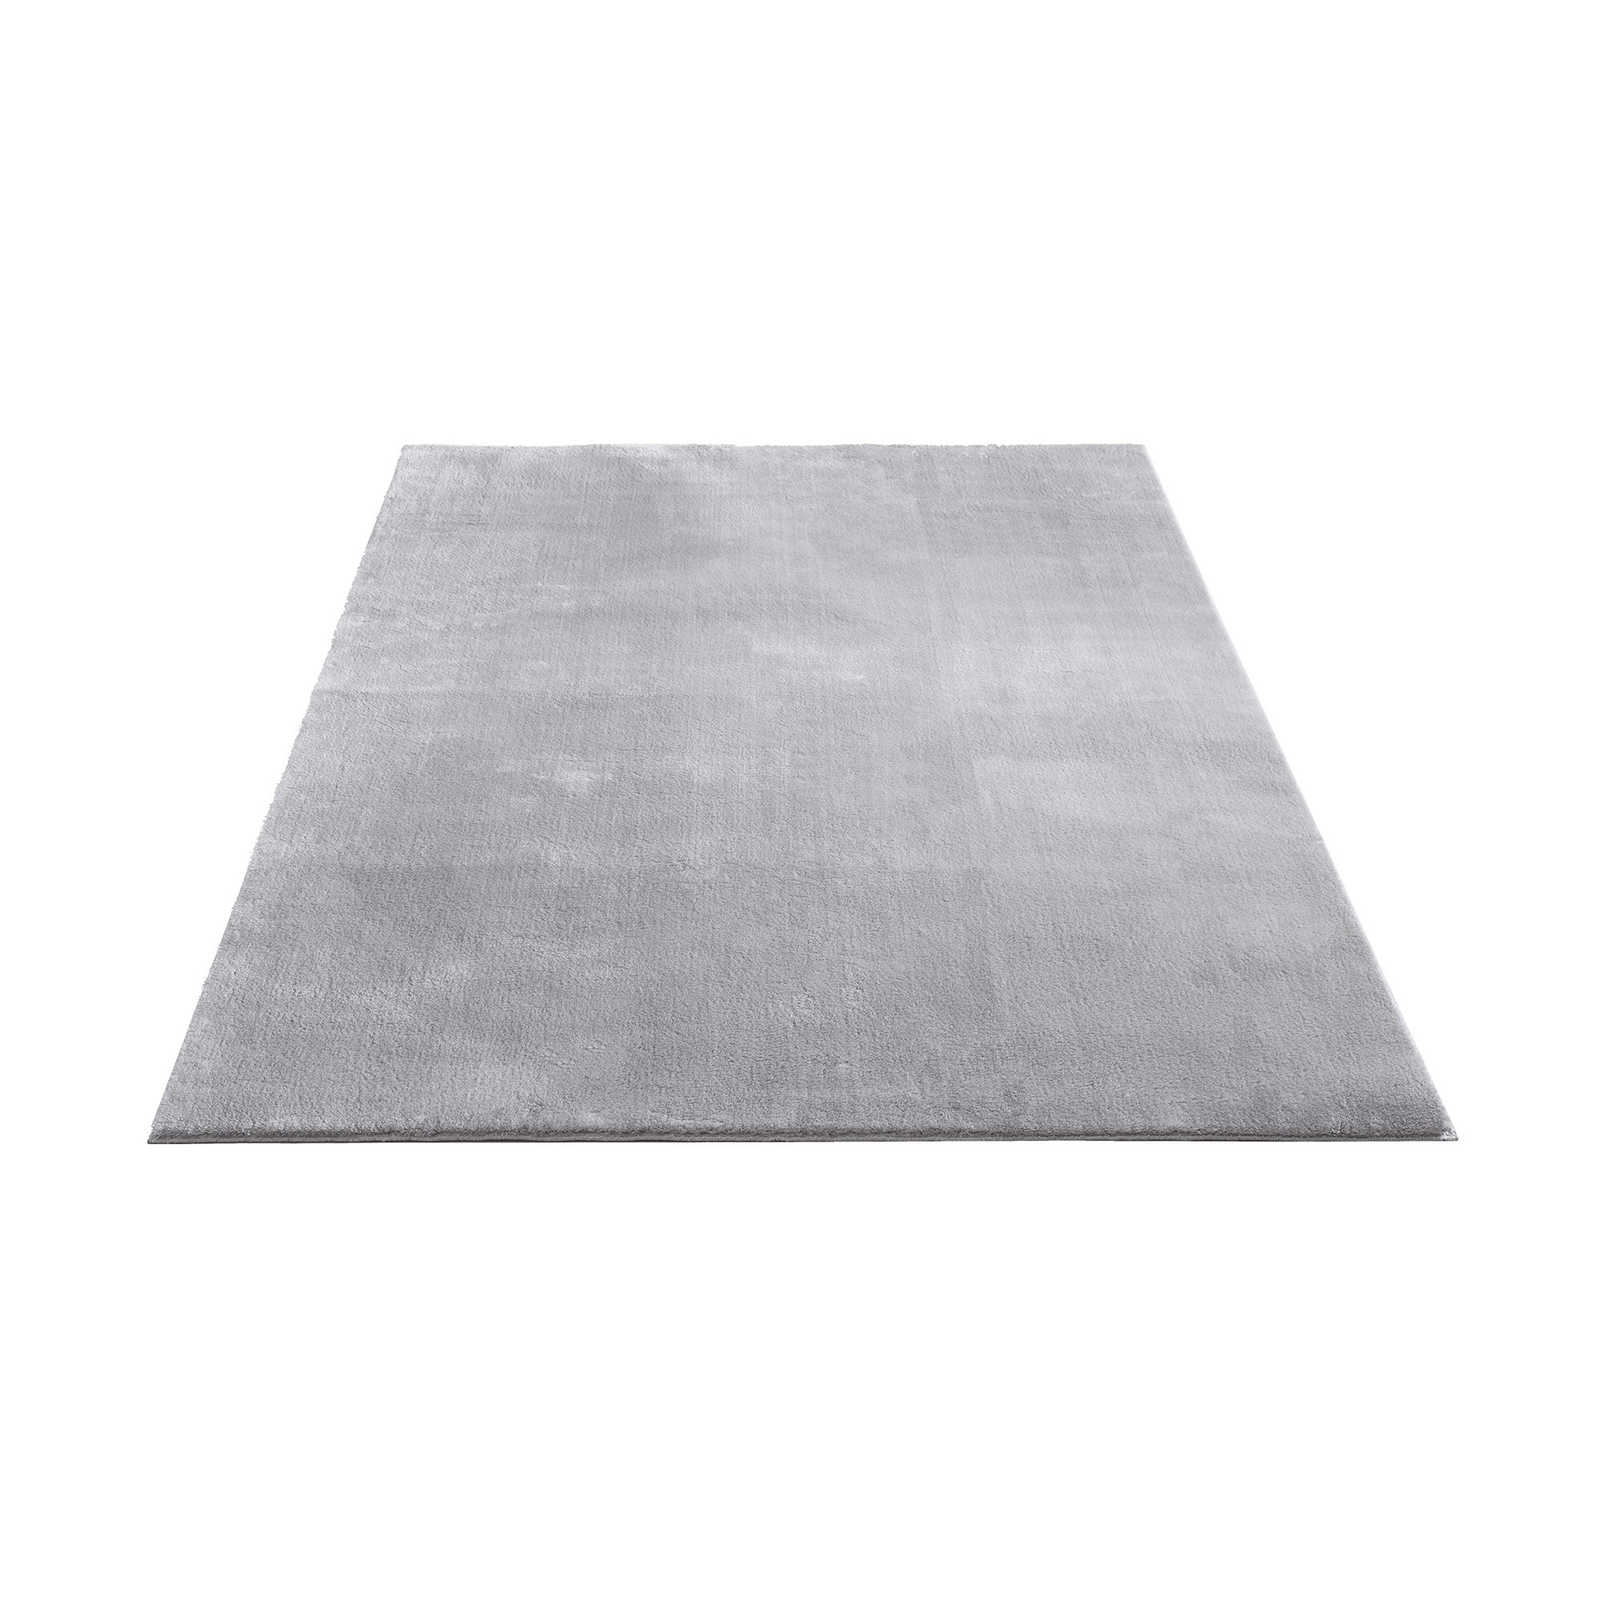 Fijn hoogpolig tapijt in grijs - 290 x 200 cm
